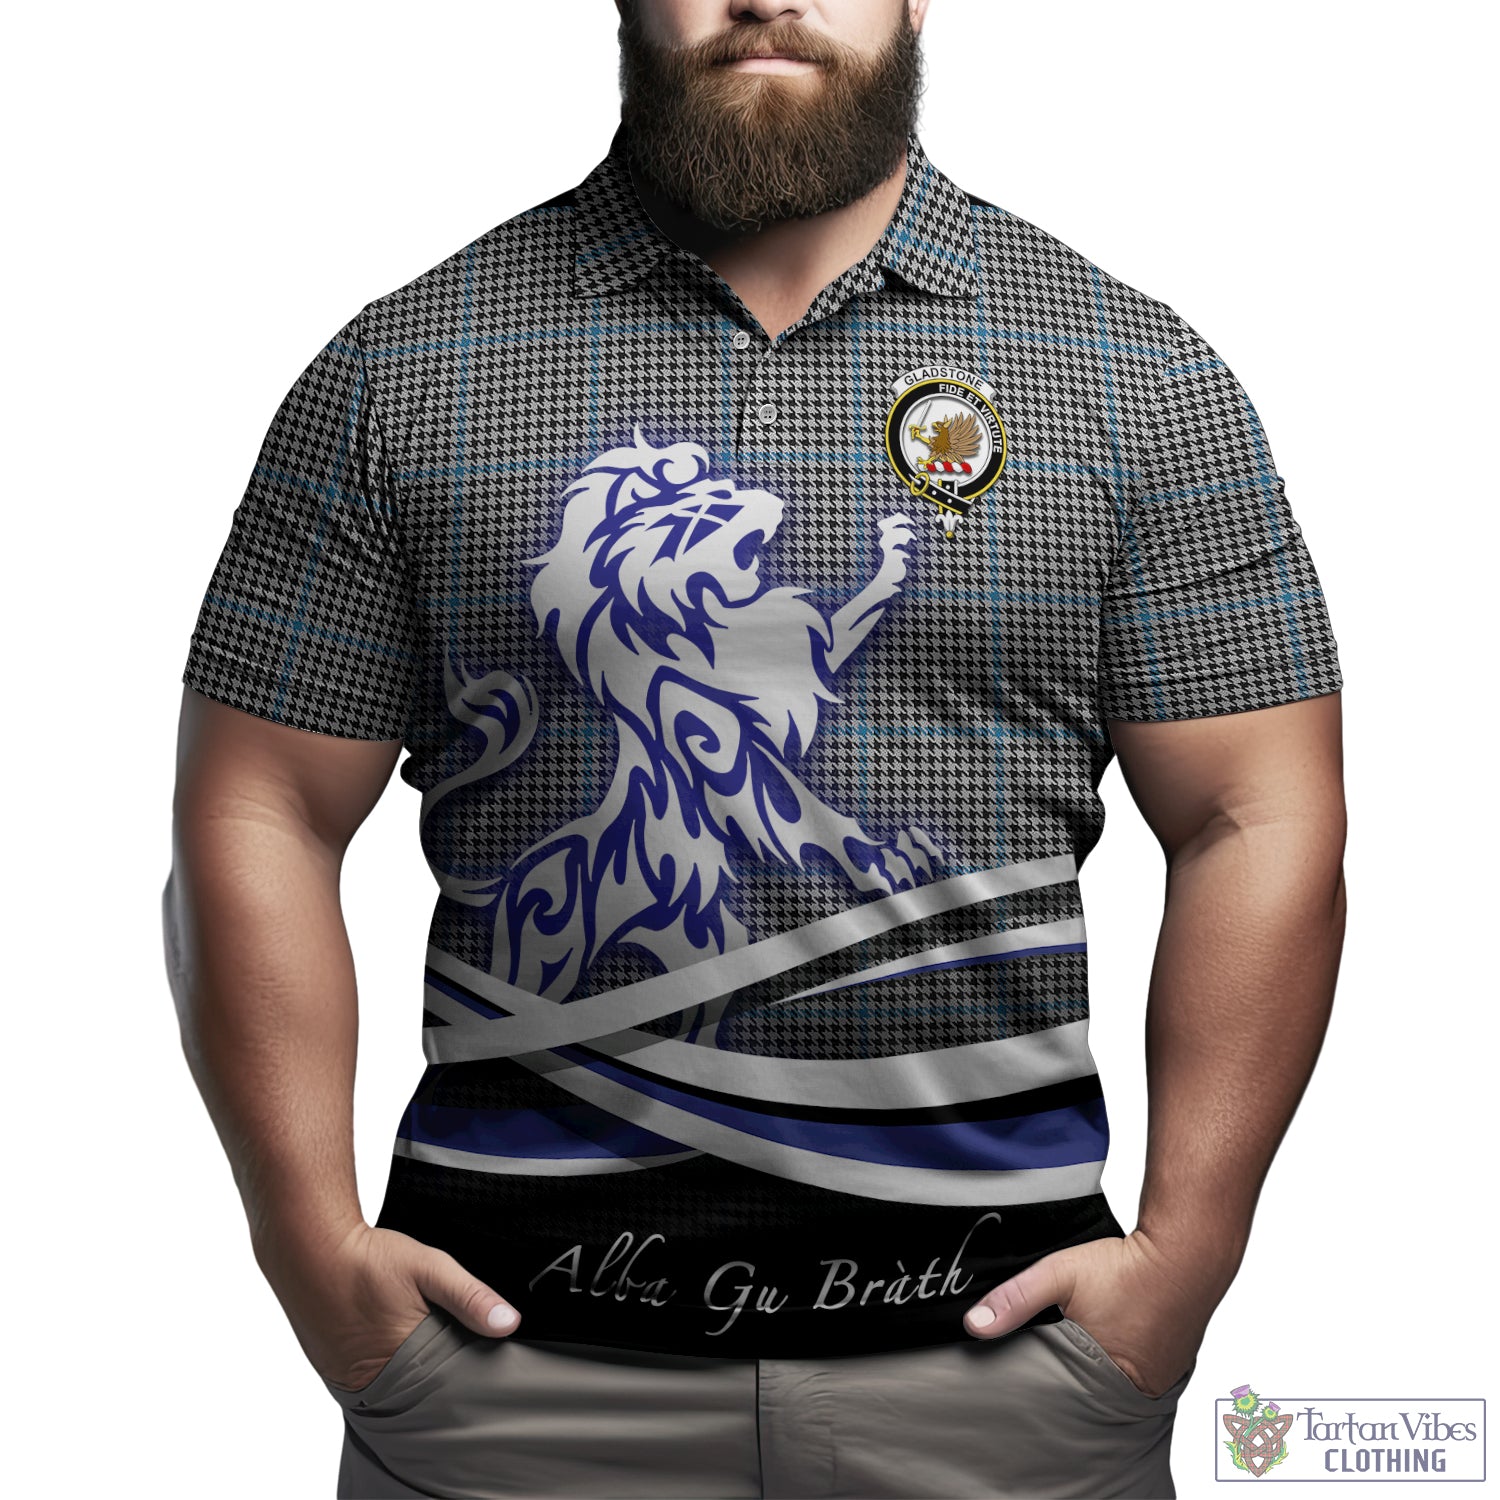 gladstone-tartan-polo-shirt-with-alba-gu-brath-regal-lion-emblem